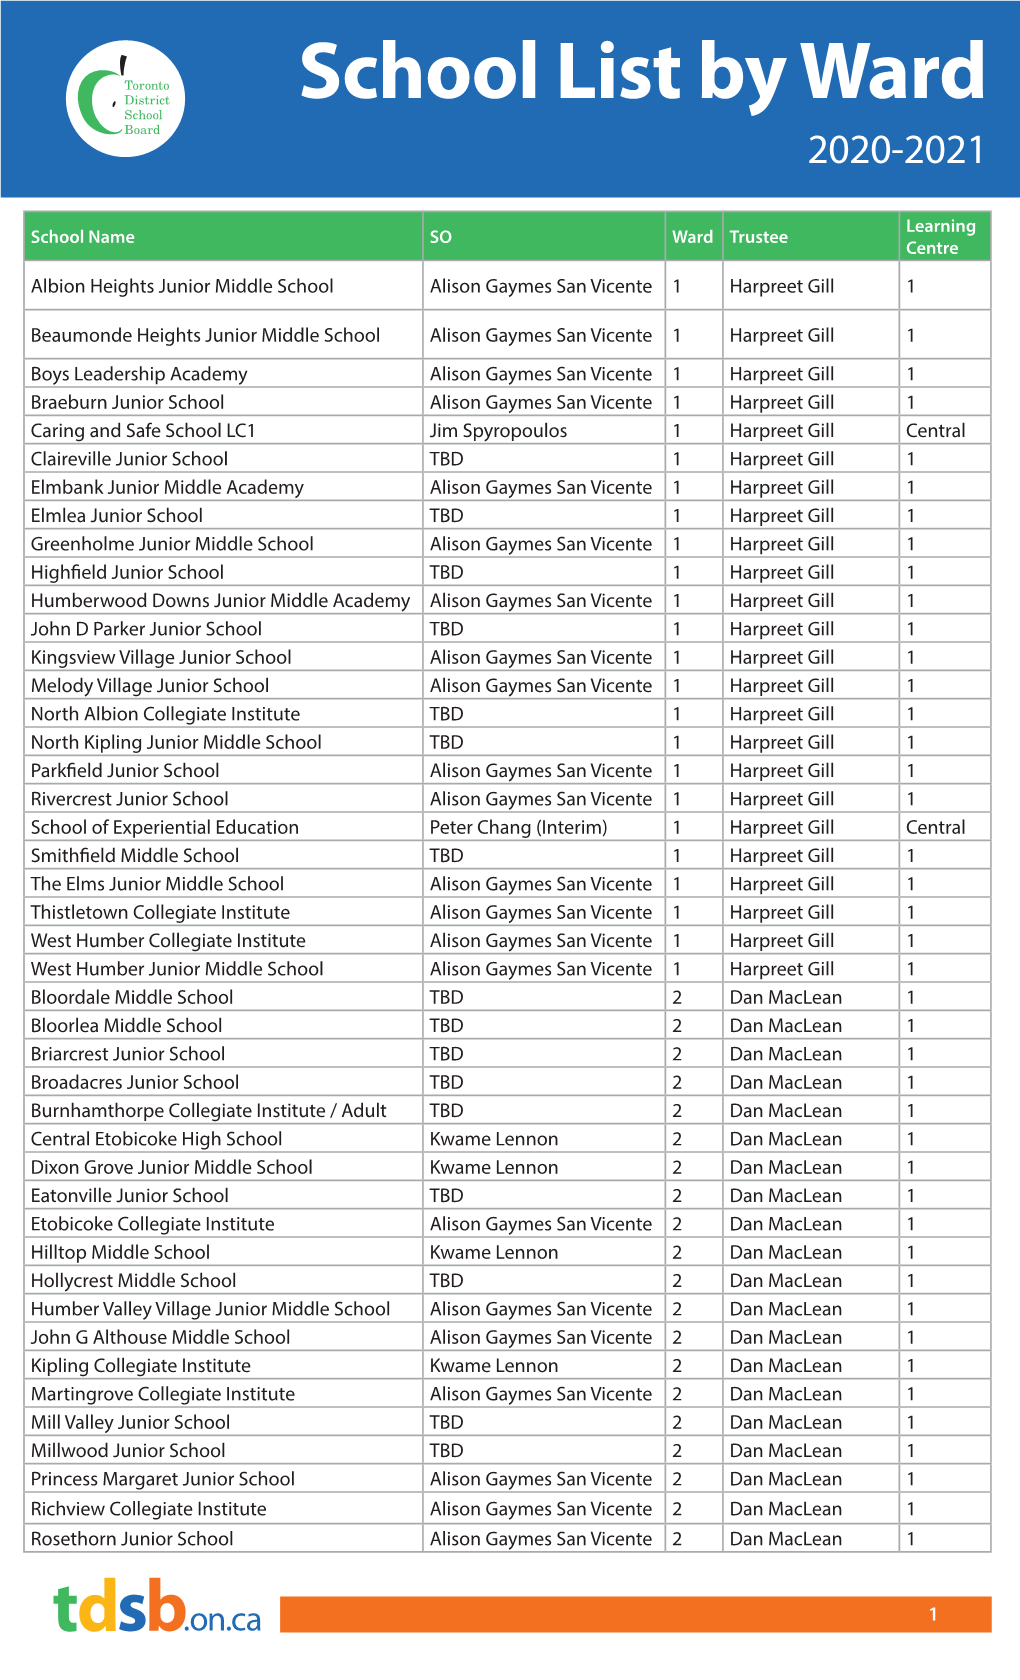 School List by Ward AUG 2021